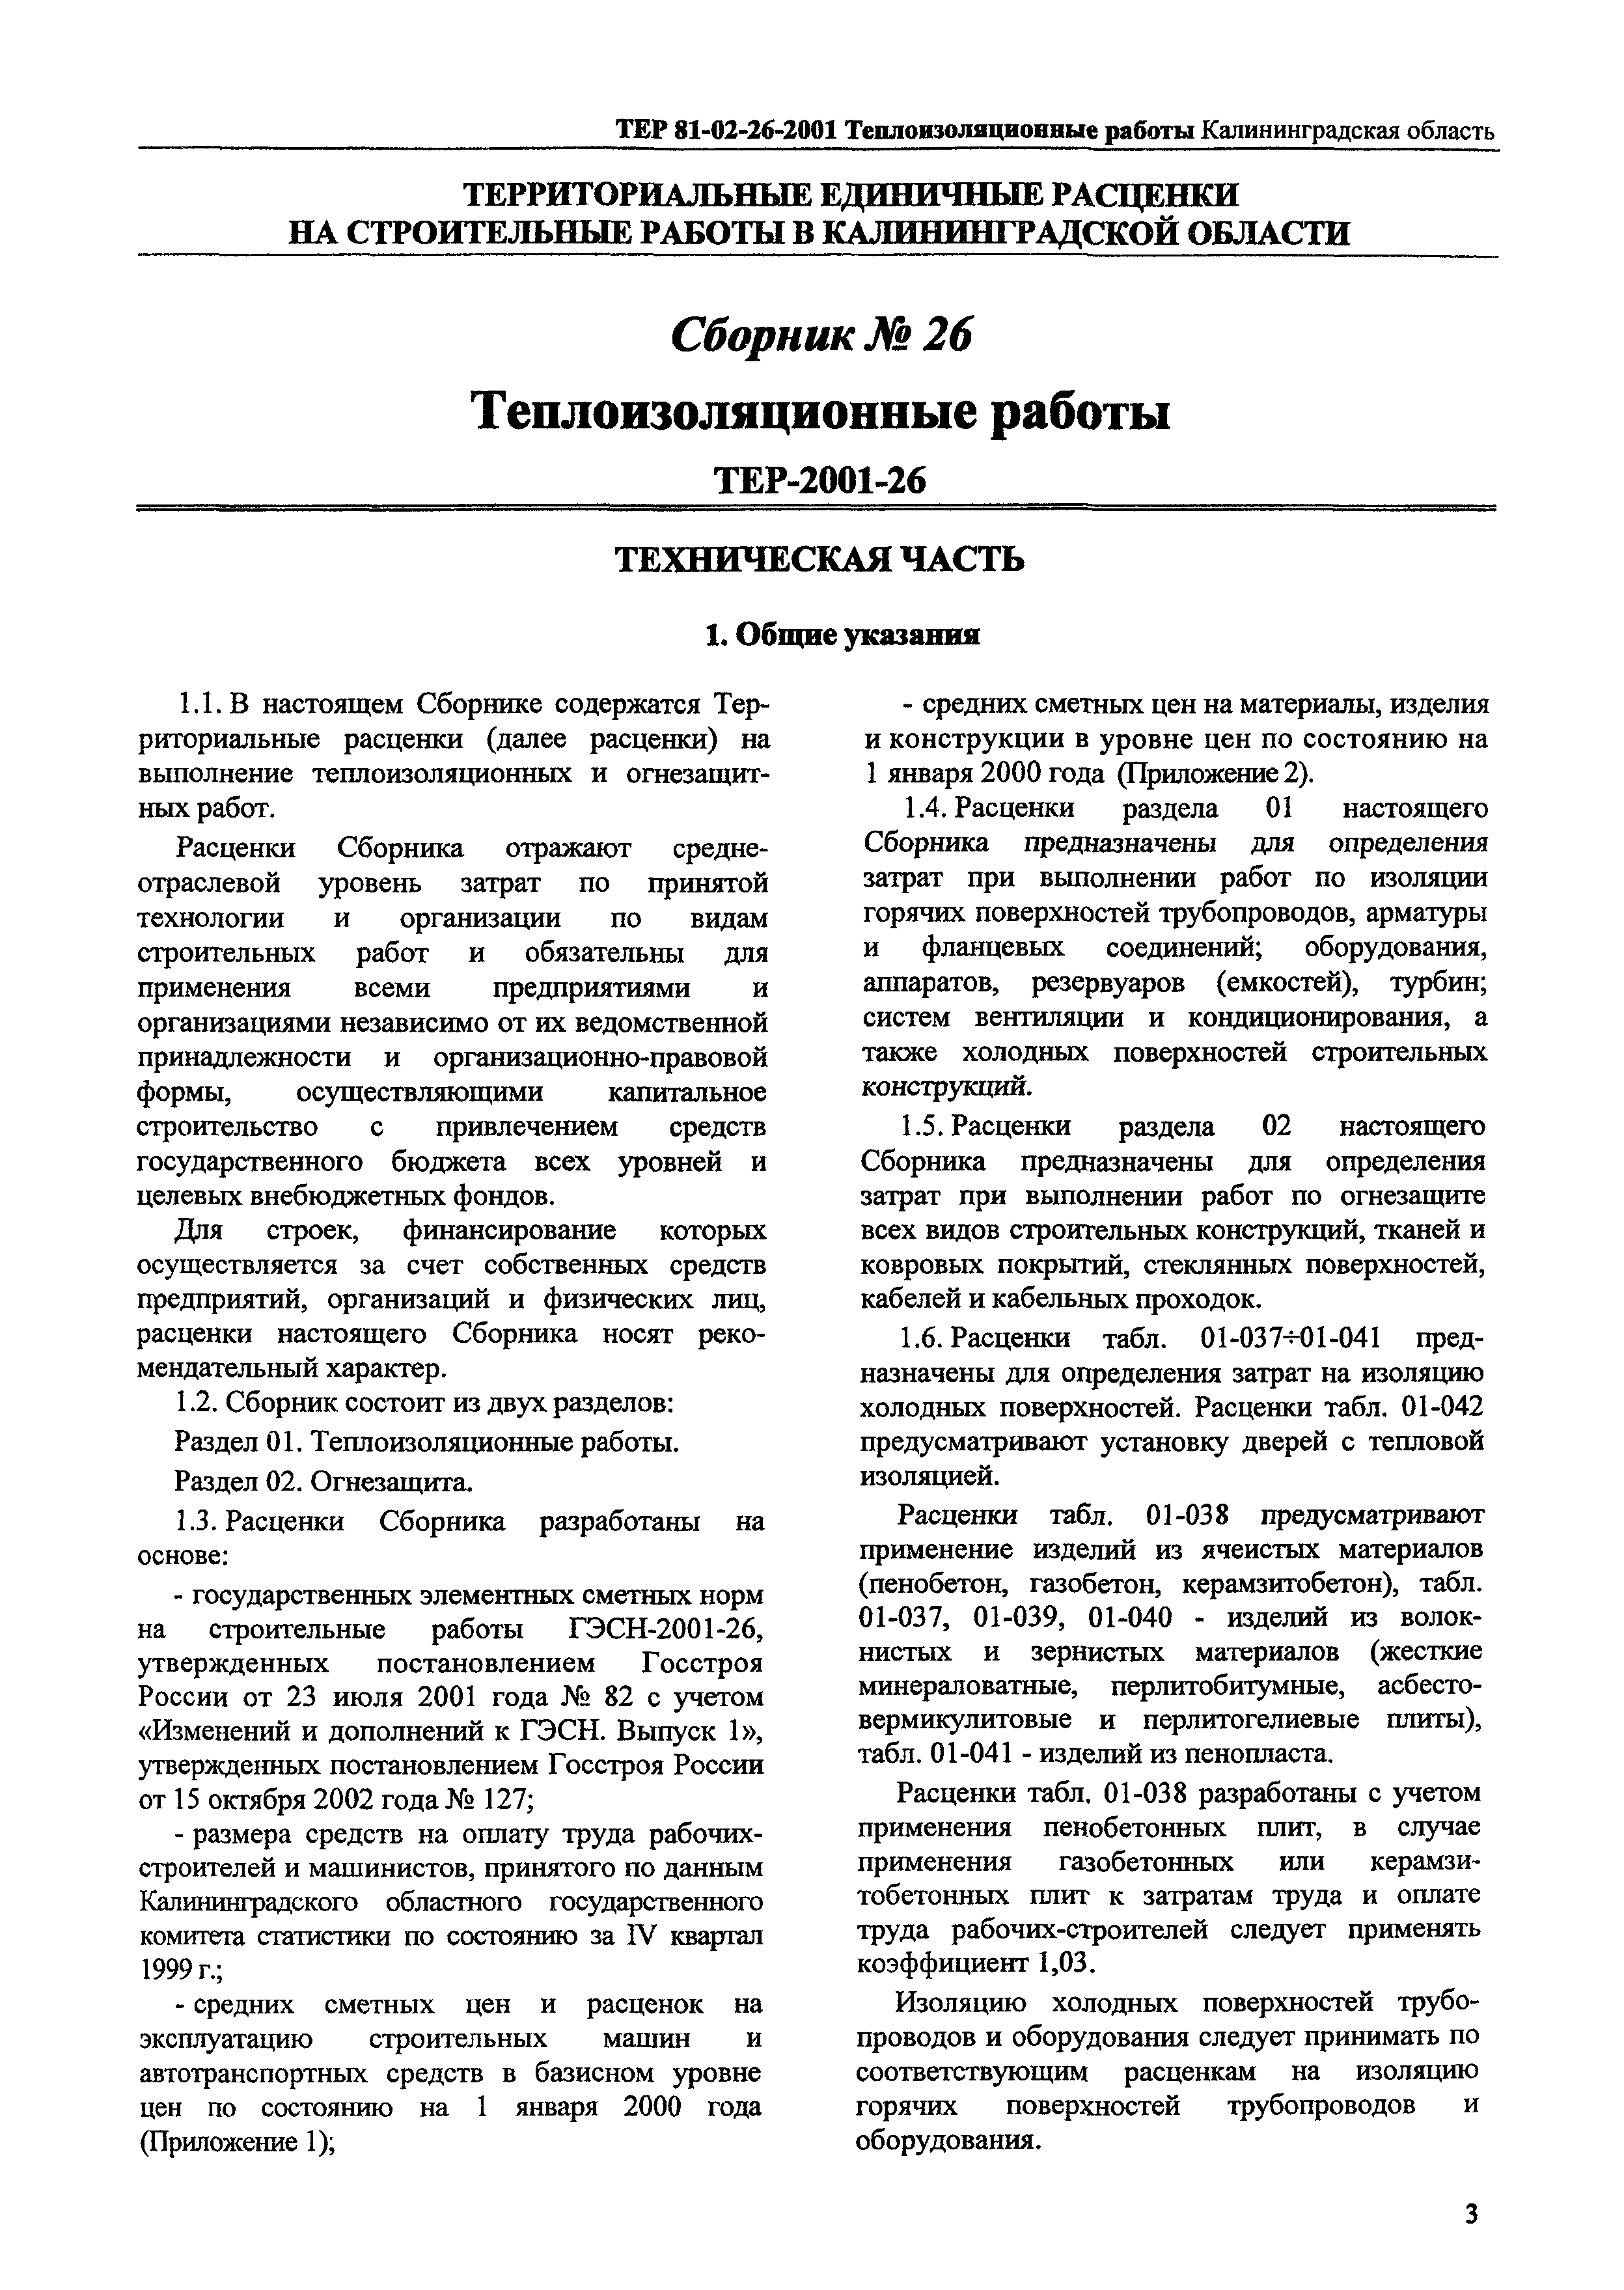 ТЕР Калининградская область 2001-26